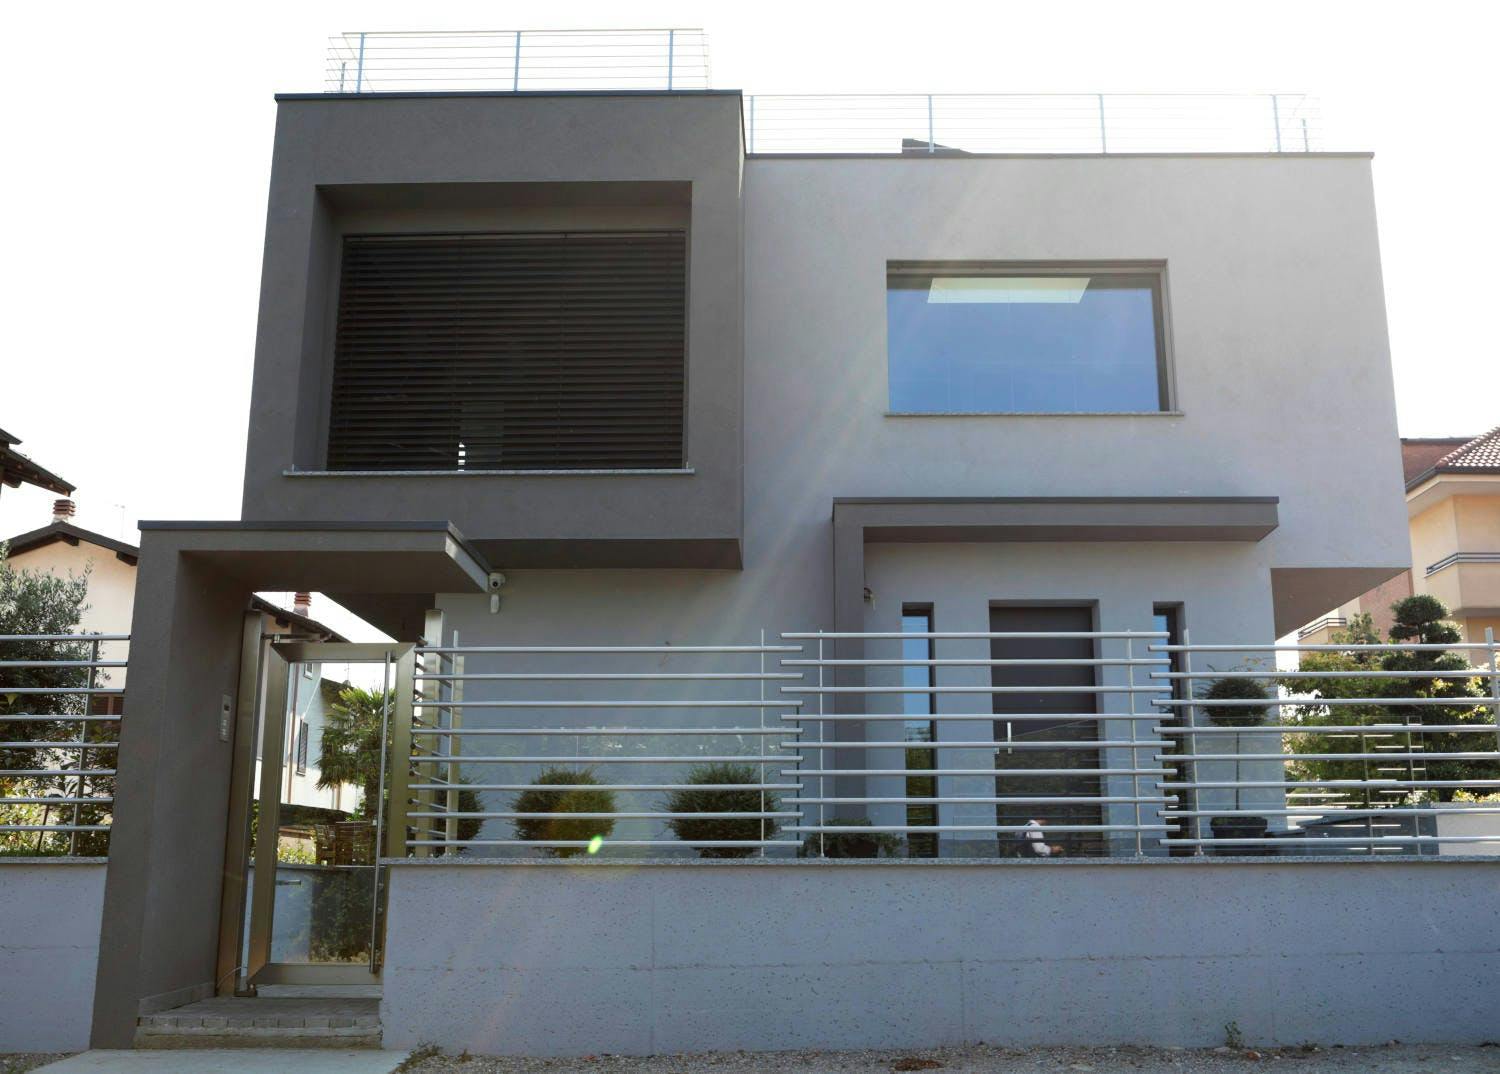 Numero immagine 44 della sezione corrente di DKTN's versatility takes the form of a private villa di Cosentino Italia